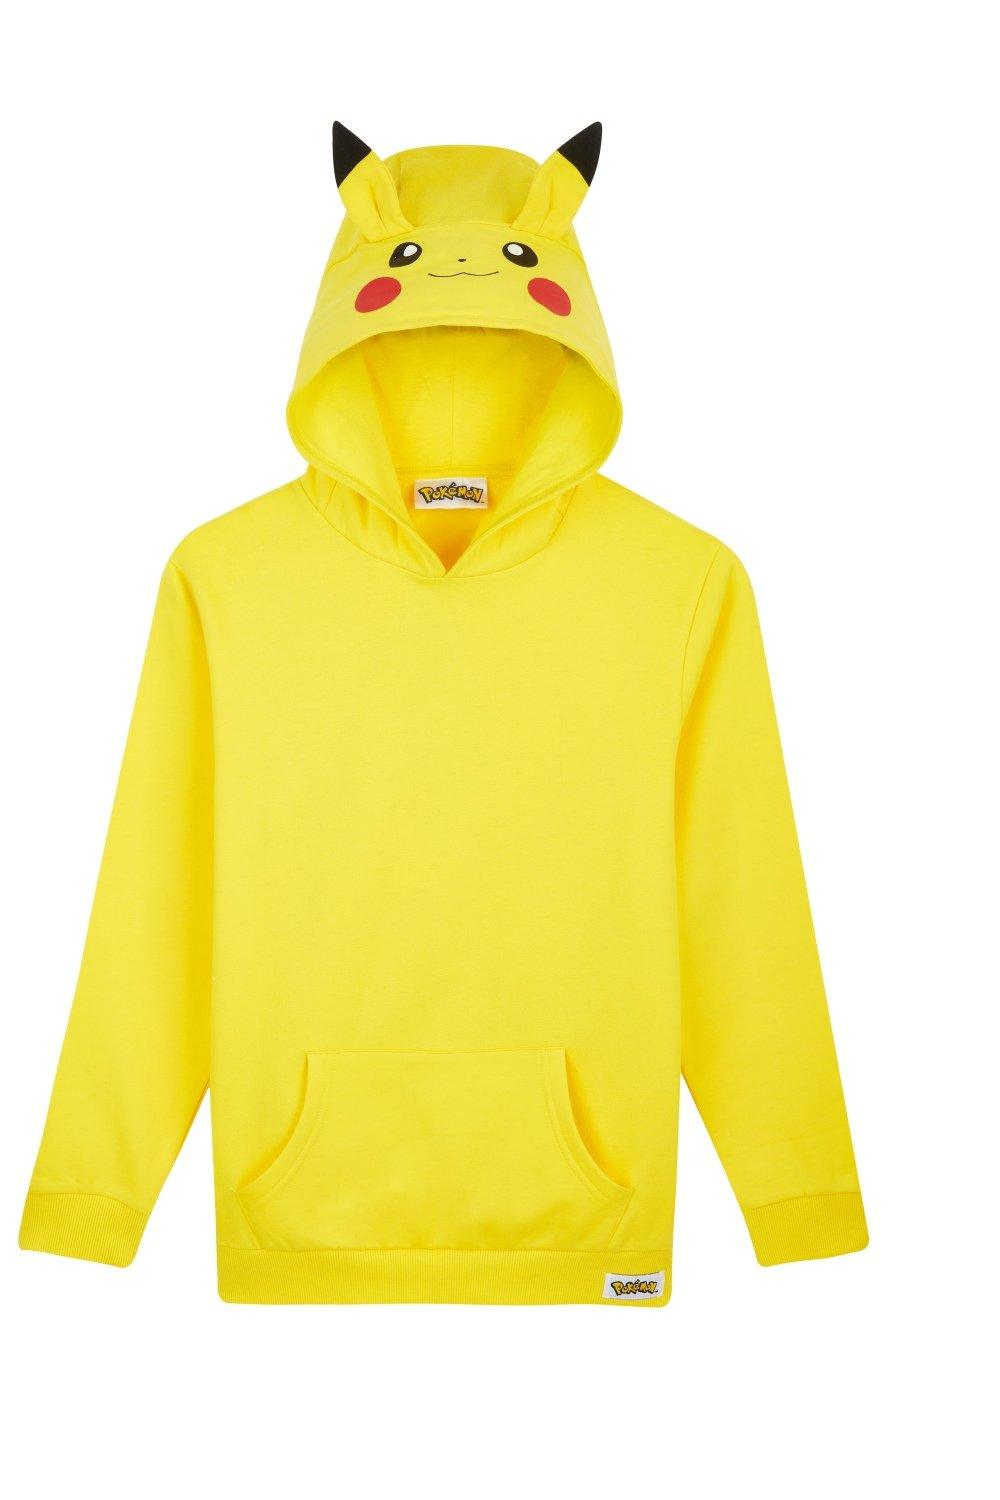 Толстовка с карманом-кенгуру Pokemon, желтый 2020 модная дизайнерская одежда cameron boyce 3d толстовка для мальчиков 3d пуловер для девочек 3d толстовка cameron boyce мужская женская толстовка